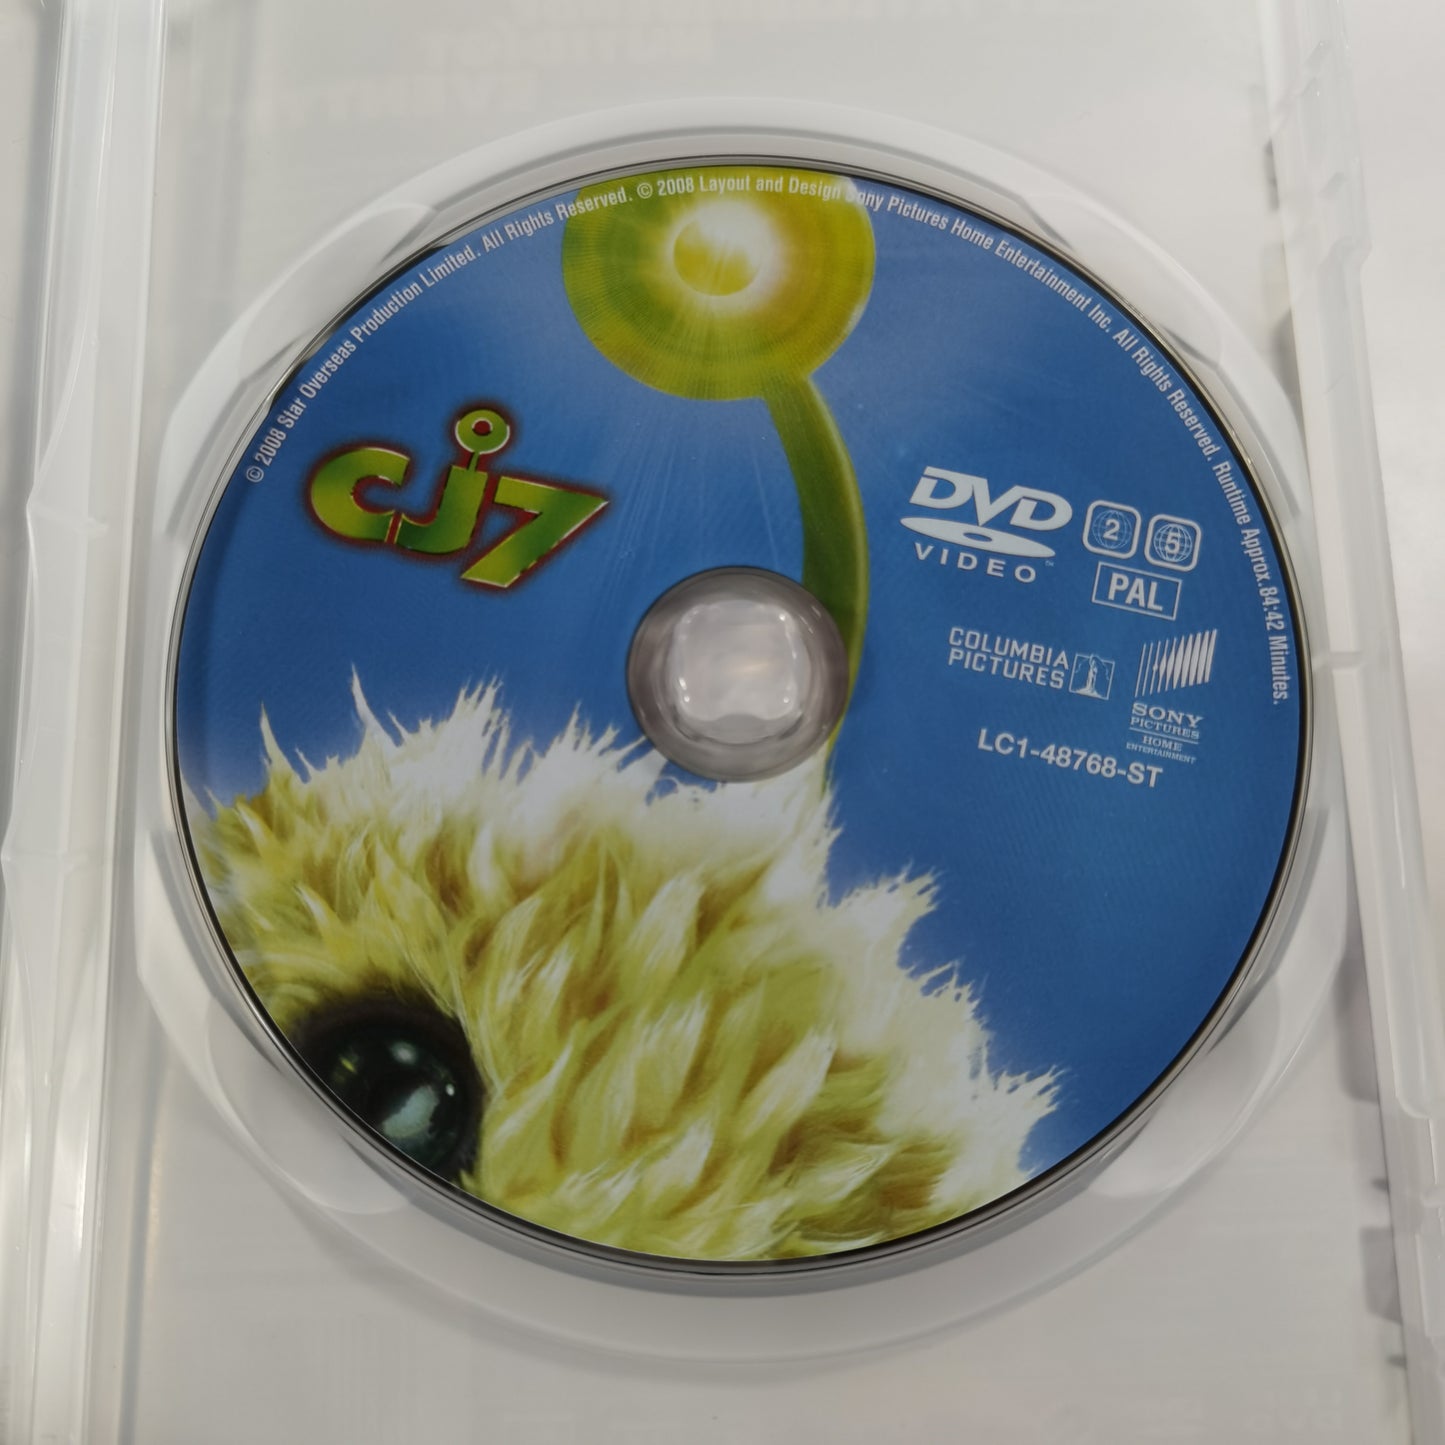 CJ7 (2007) - DVD DK 2008 RC